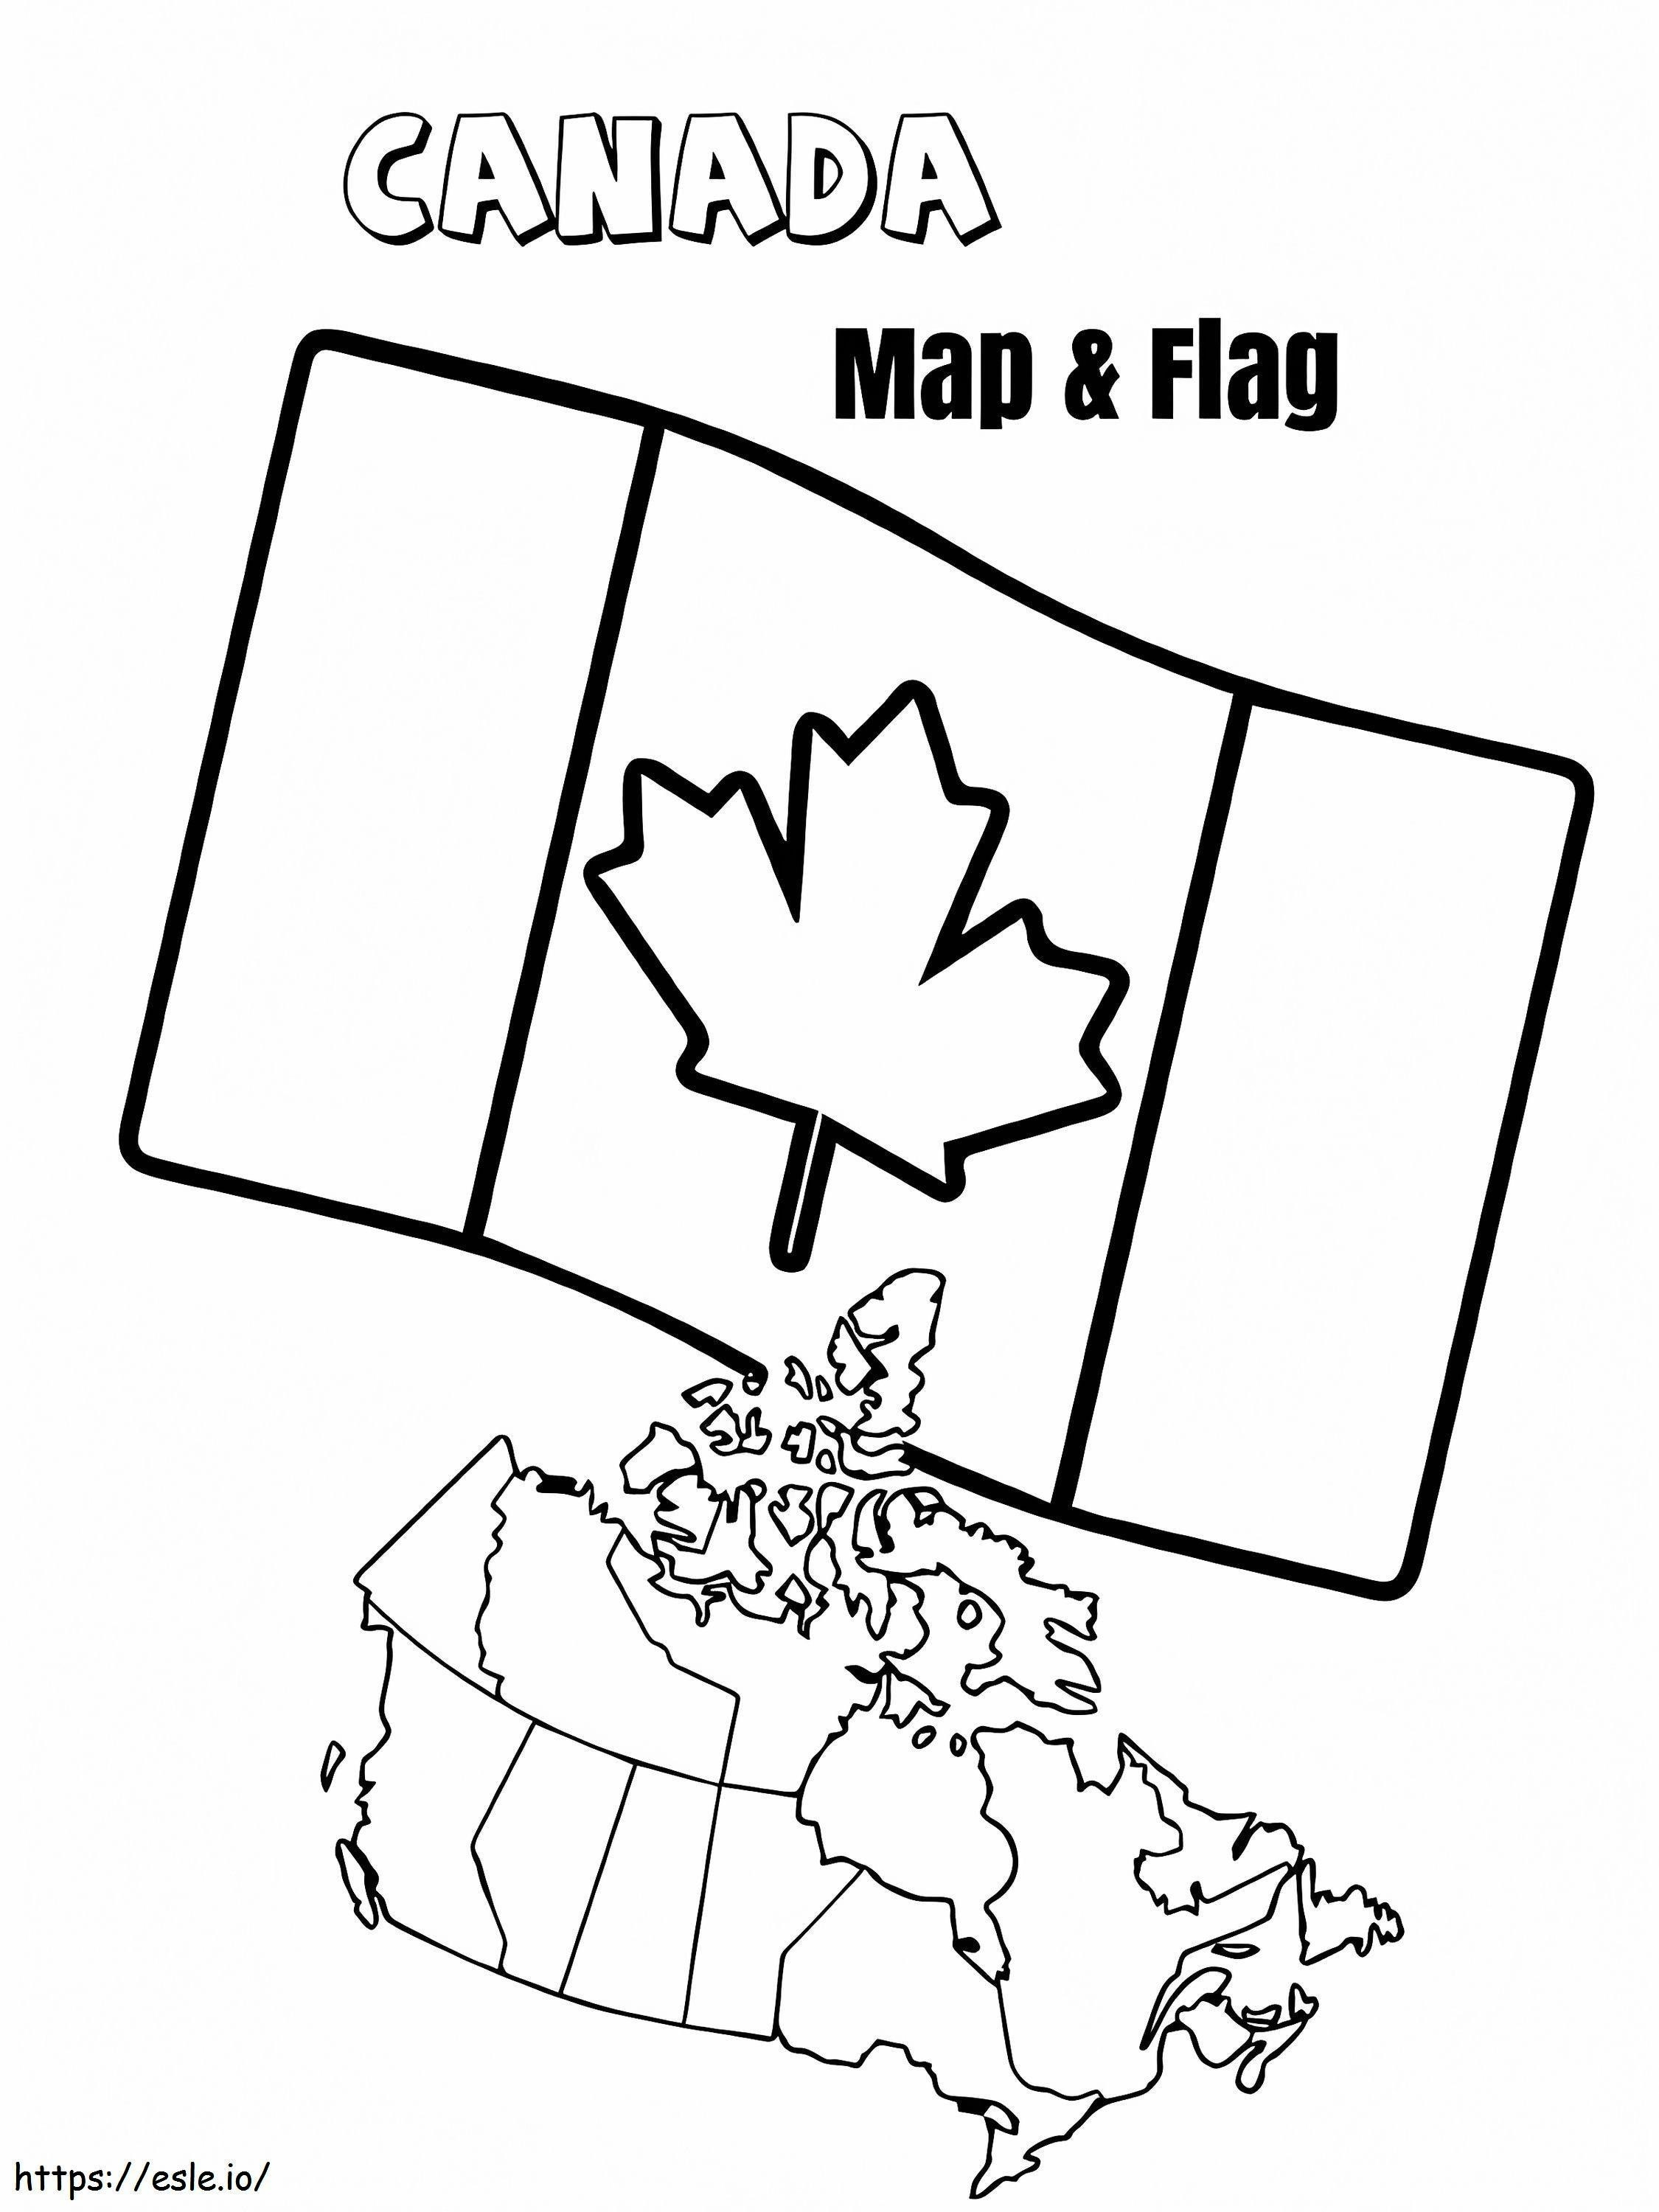 Bandiera e mappa del Canada da colorare